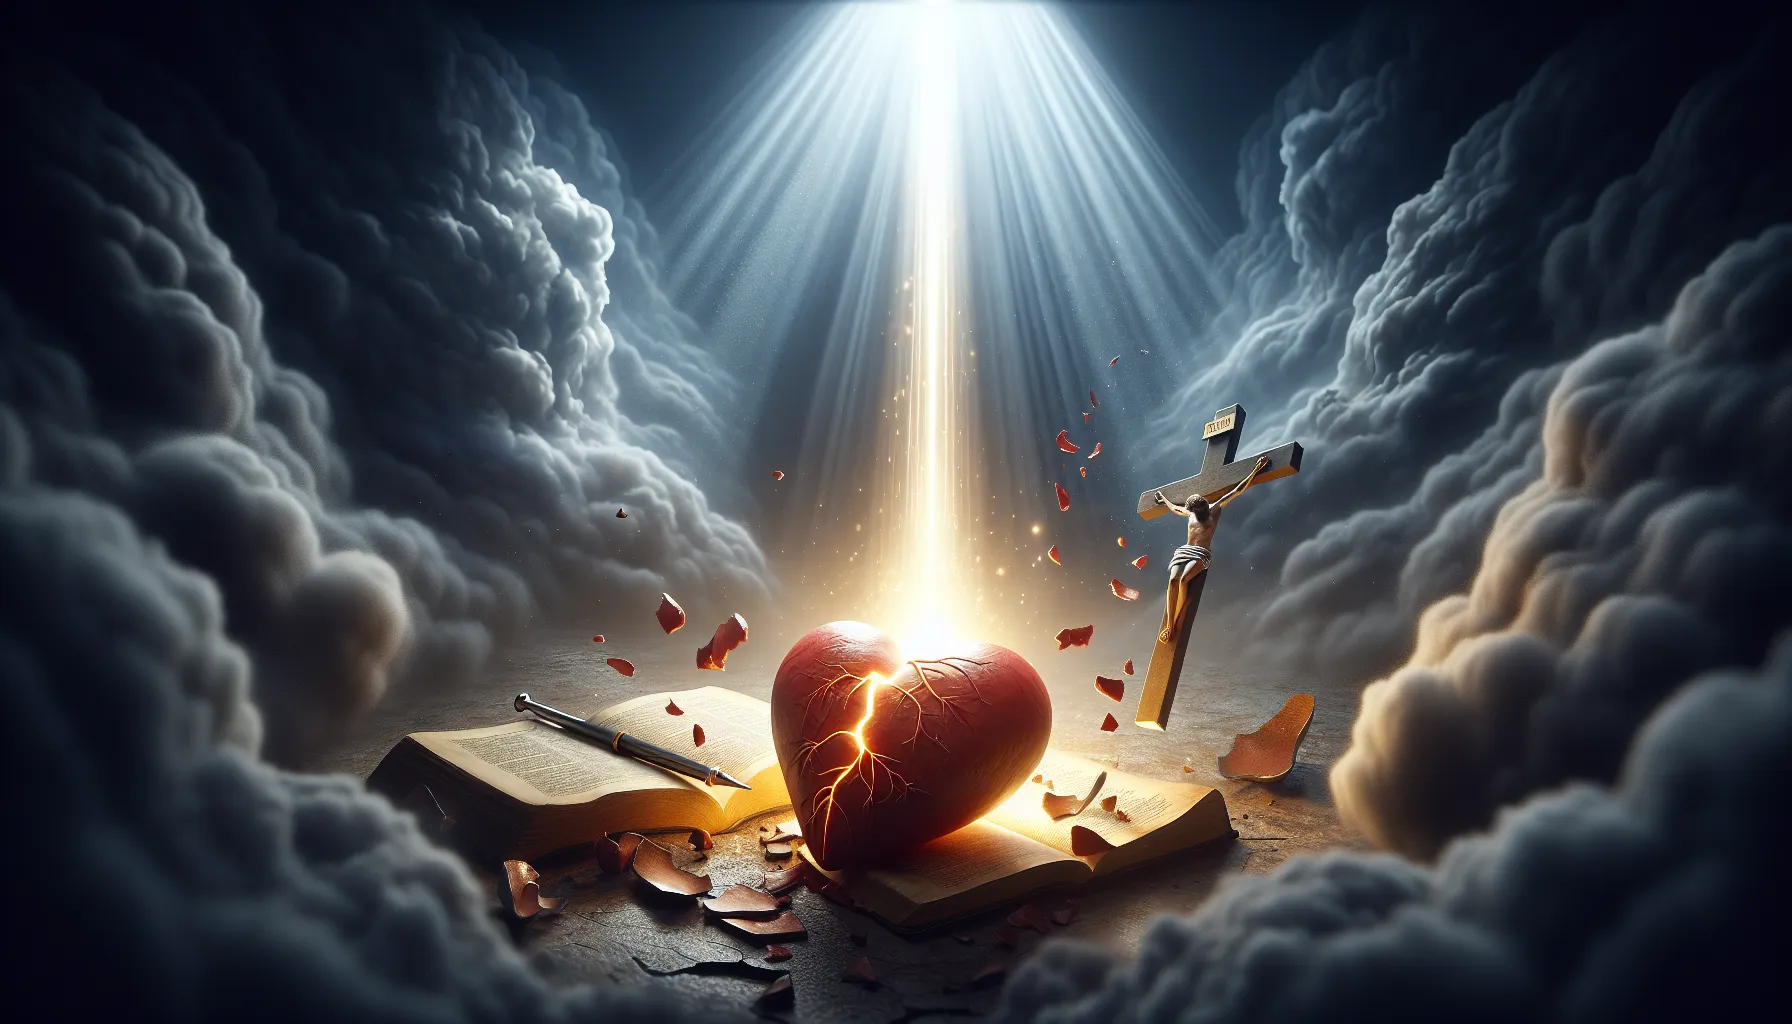 Imagen ilustrativa de un rayo de luz divina iluminando un corazón roto